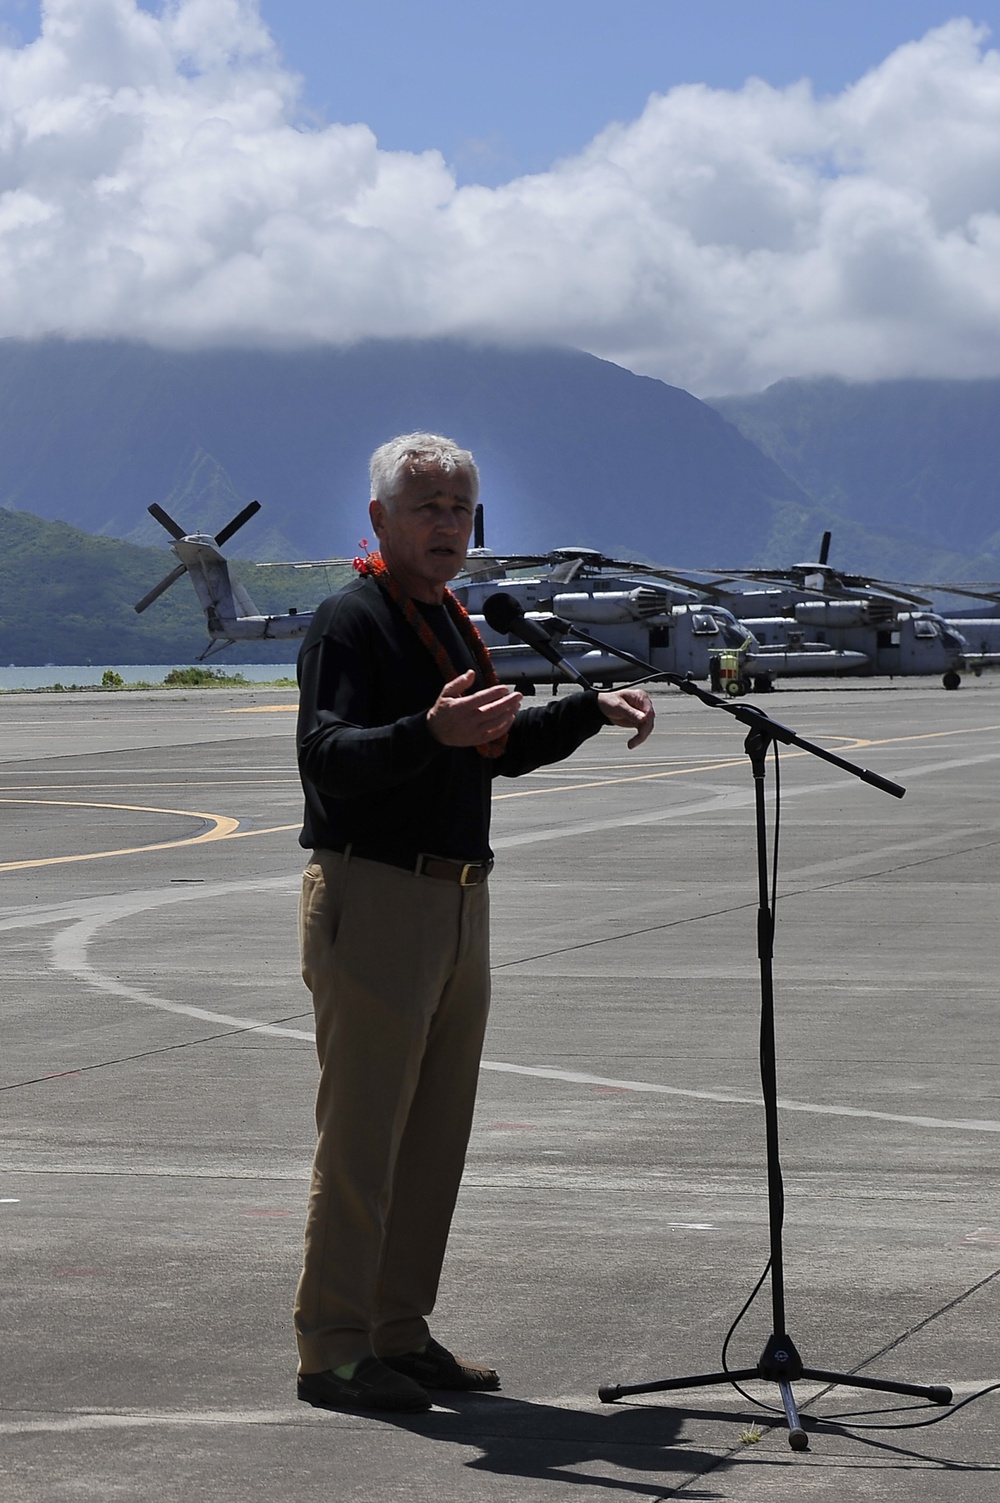 Secretary of Defense visits Marines at Marine Corps Air Station Kaneohe Bay, Hawaii